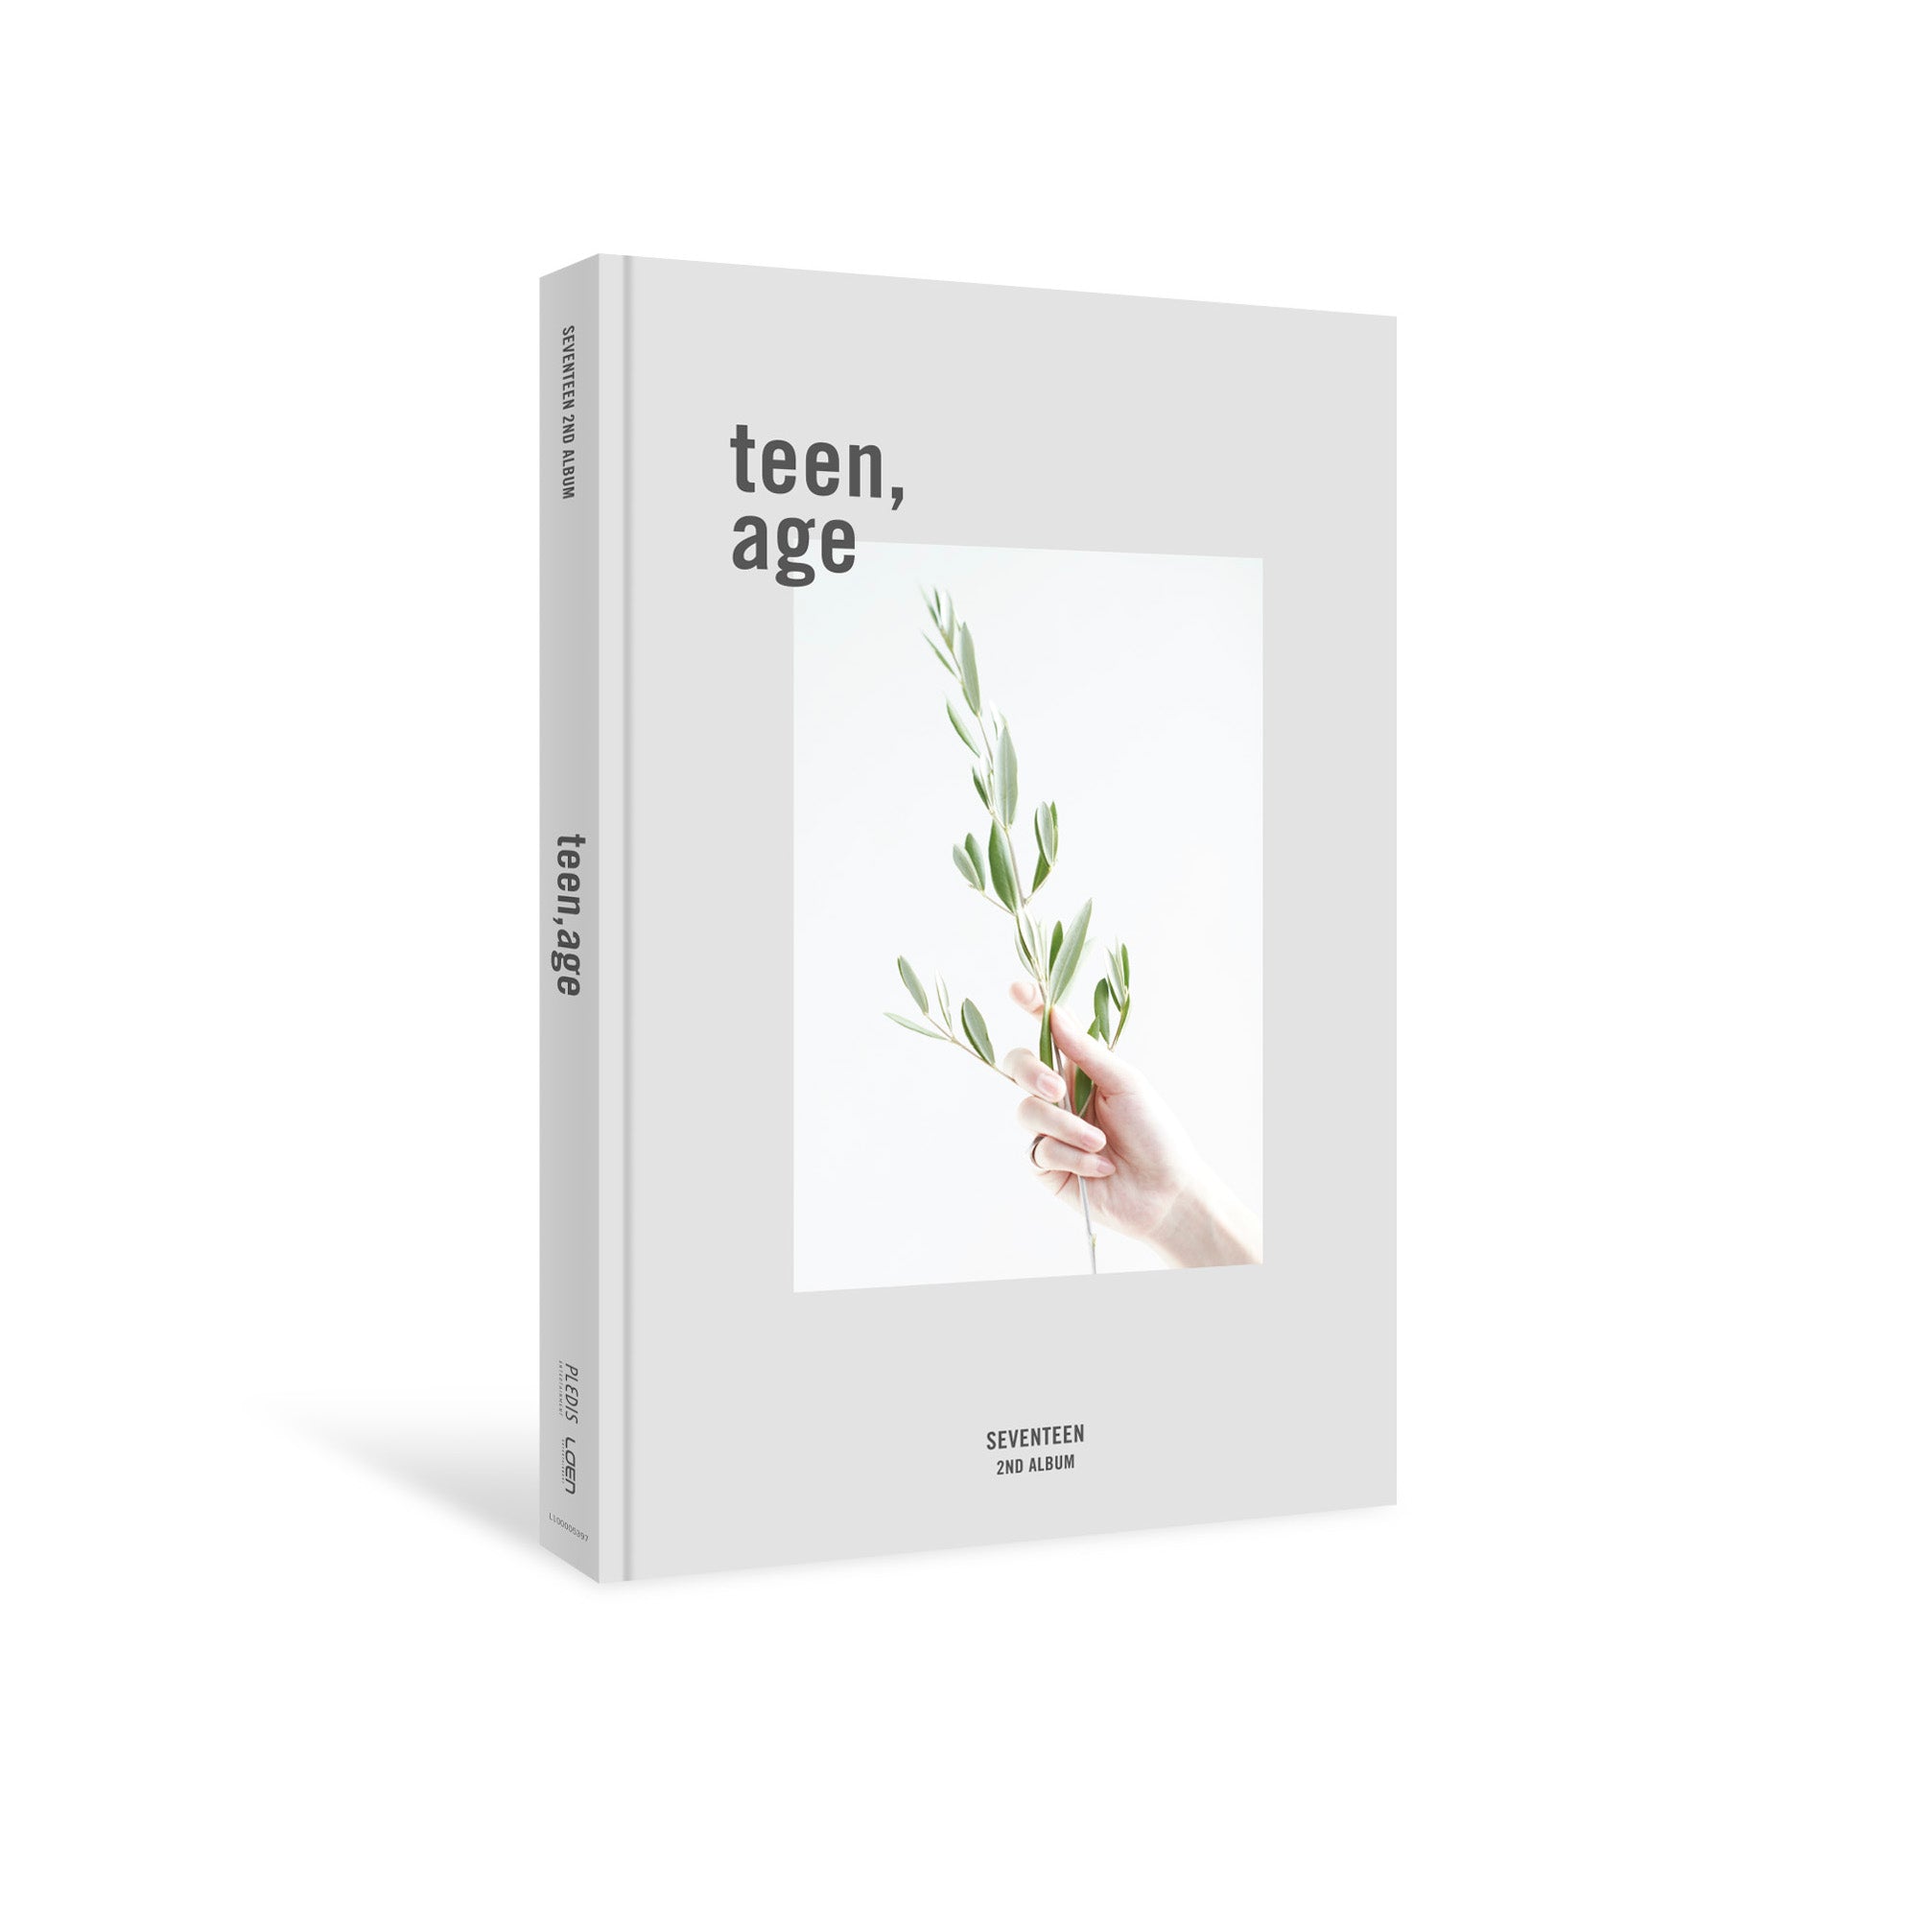 SEVENTEEN - 2do Álbum Completo TEEN, AGE